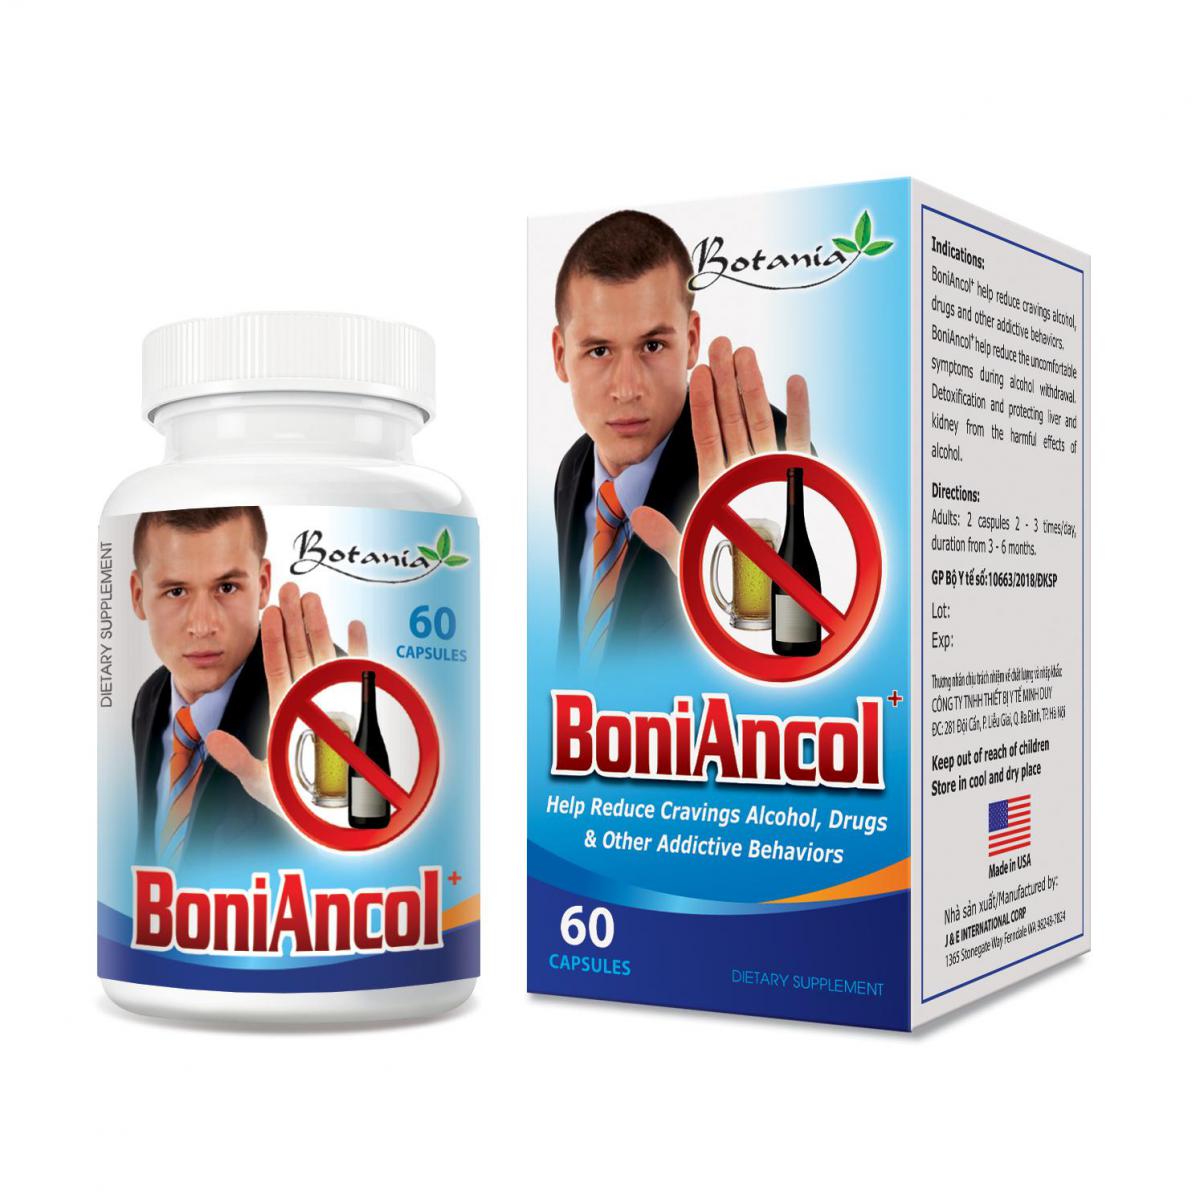  BoniAncol + - Giải pháp hoàn hảo giúp bạn uống rượu không say